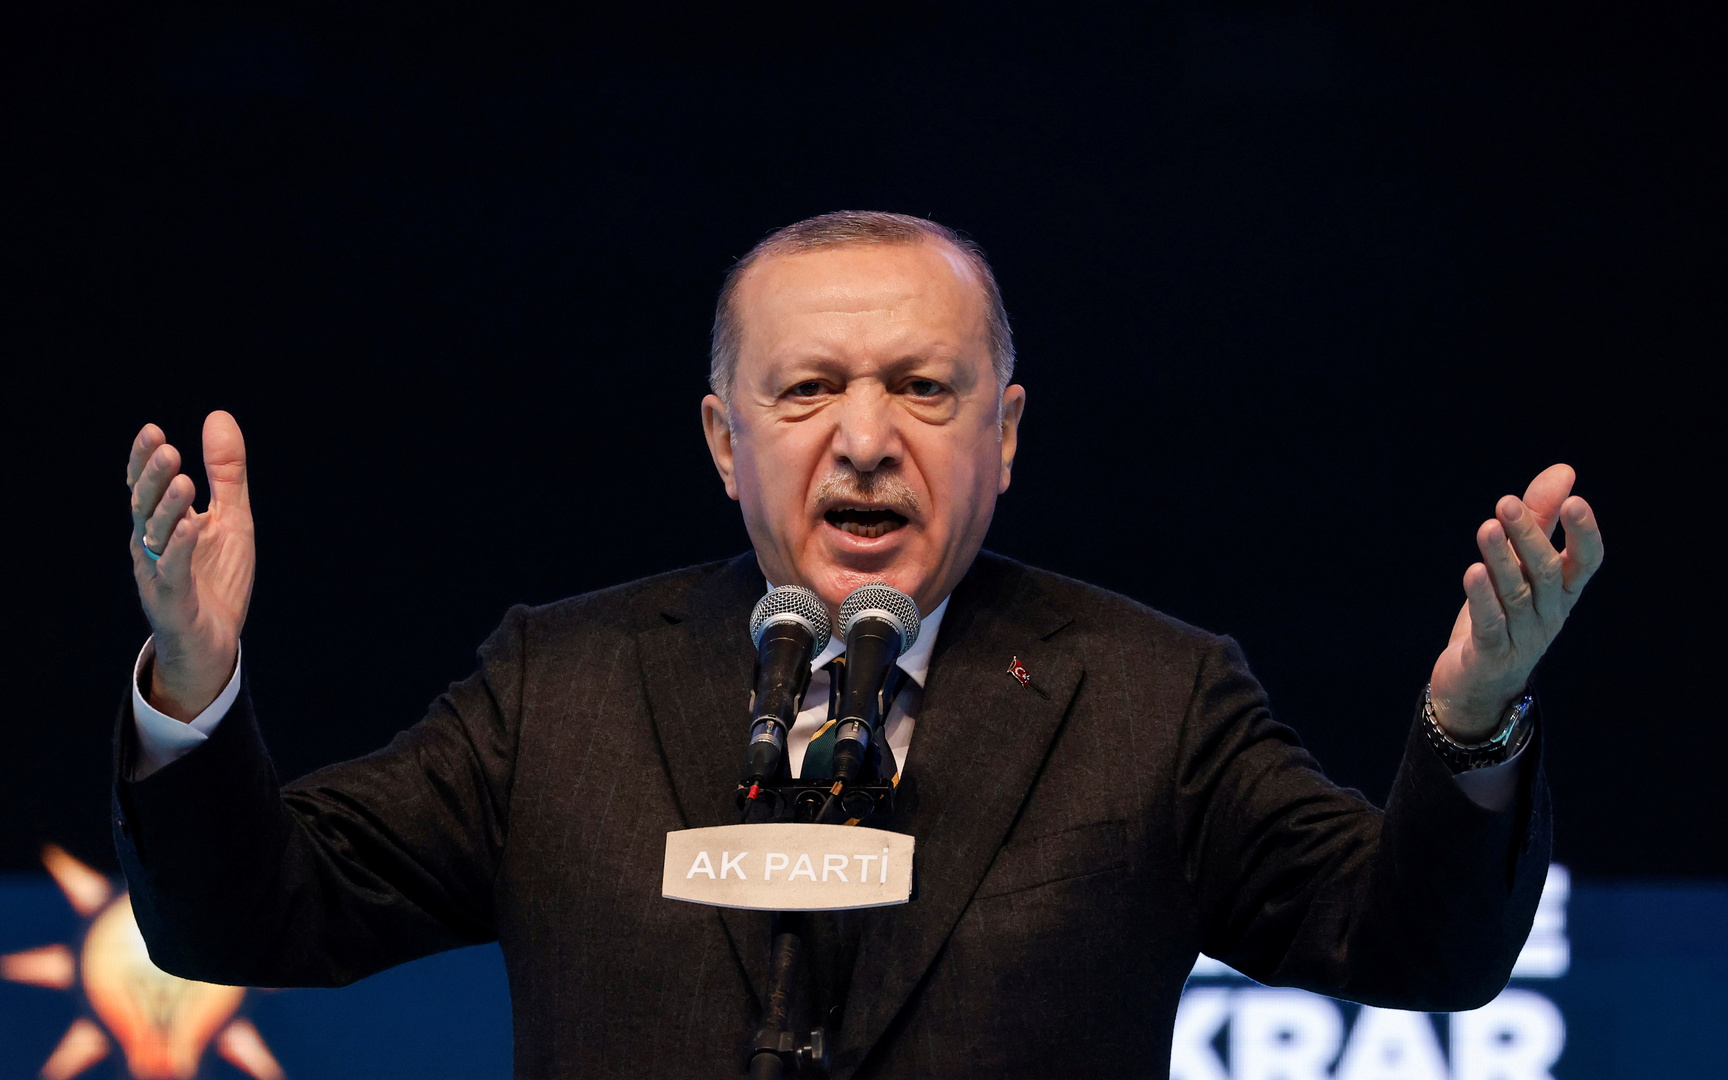 أردوغان: رسالة ضباط البحرية السابقين تضم تلميحات انقلابية ولا ننوي الانسحاب من اتفاقية مونترو